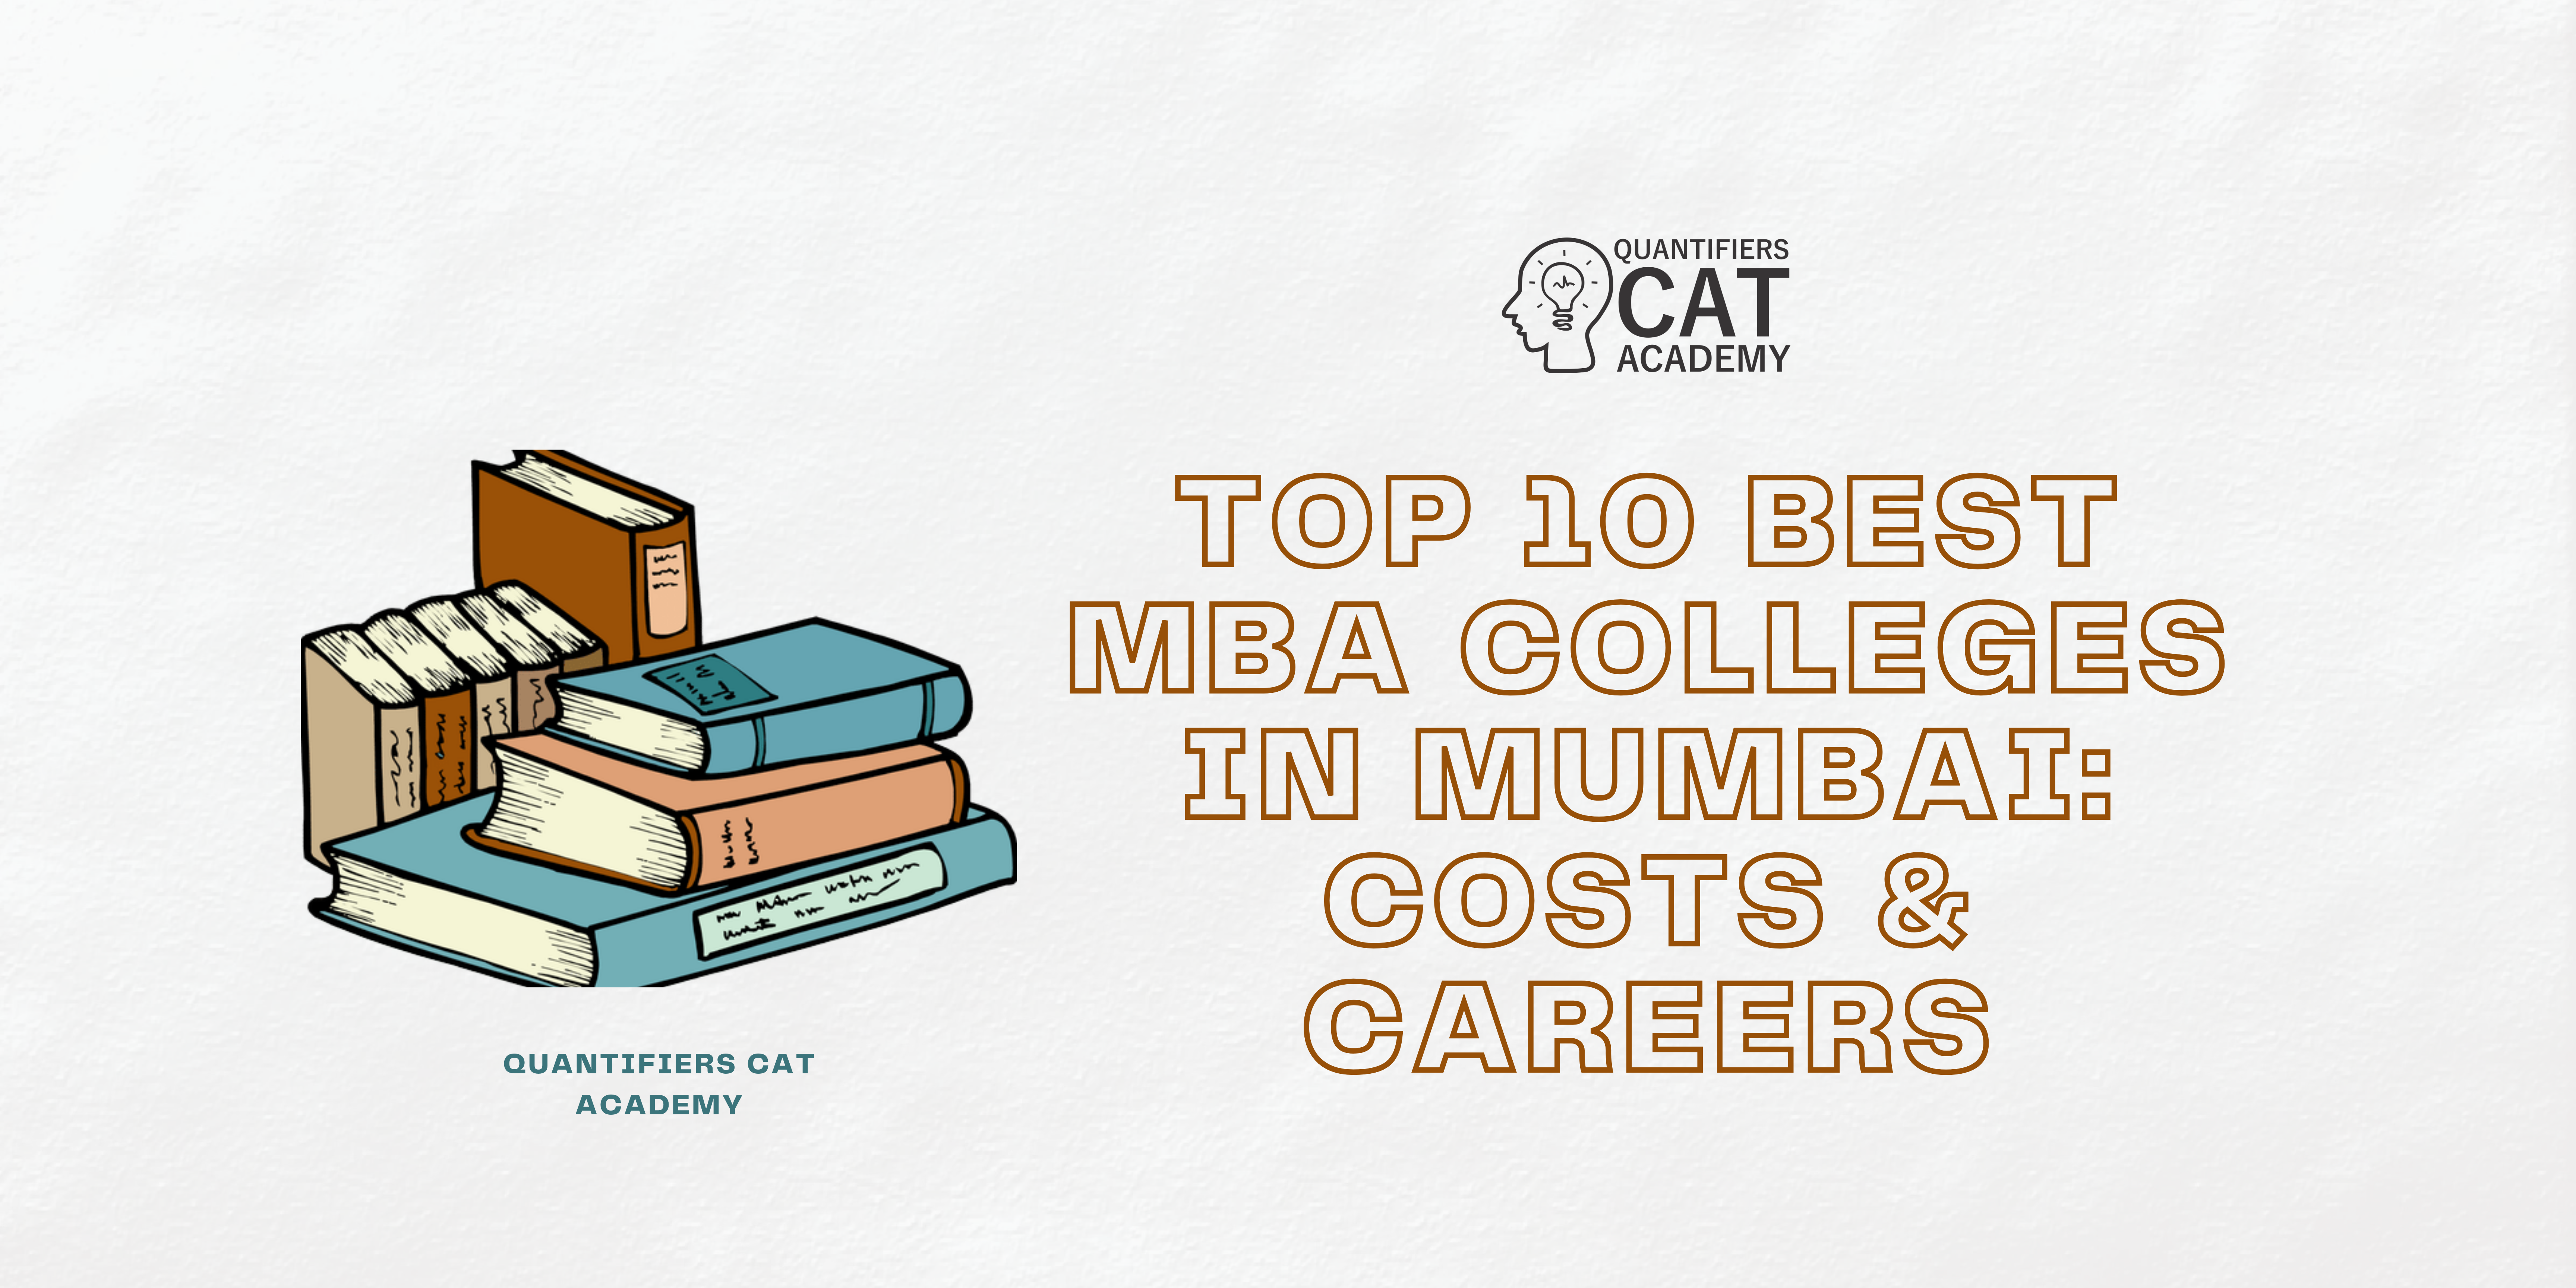 MBA colleges in Mumbai